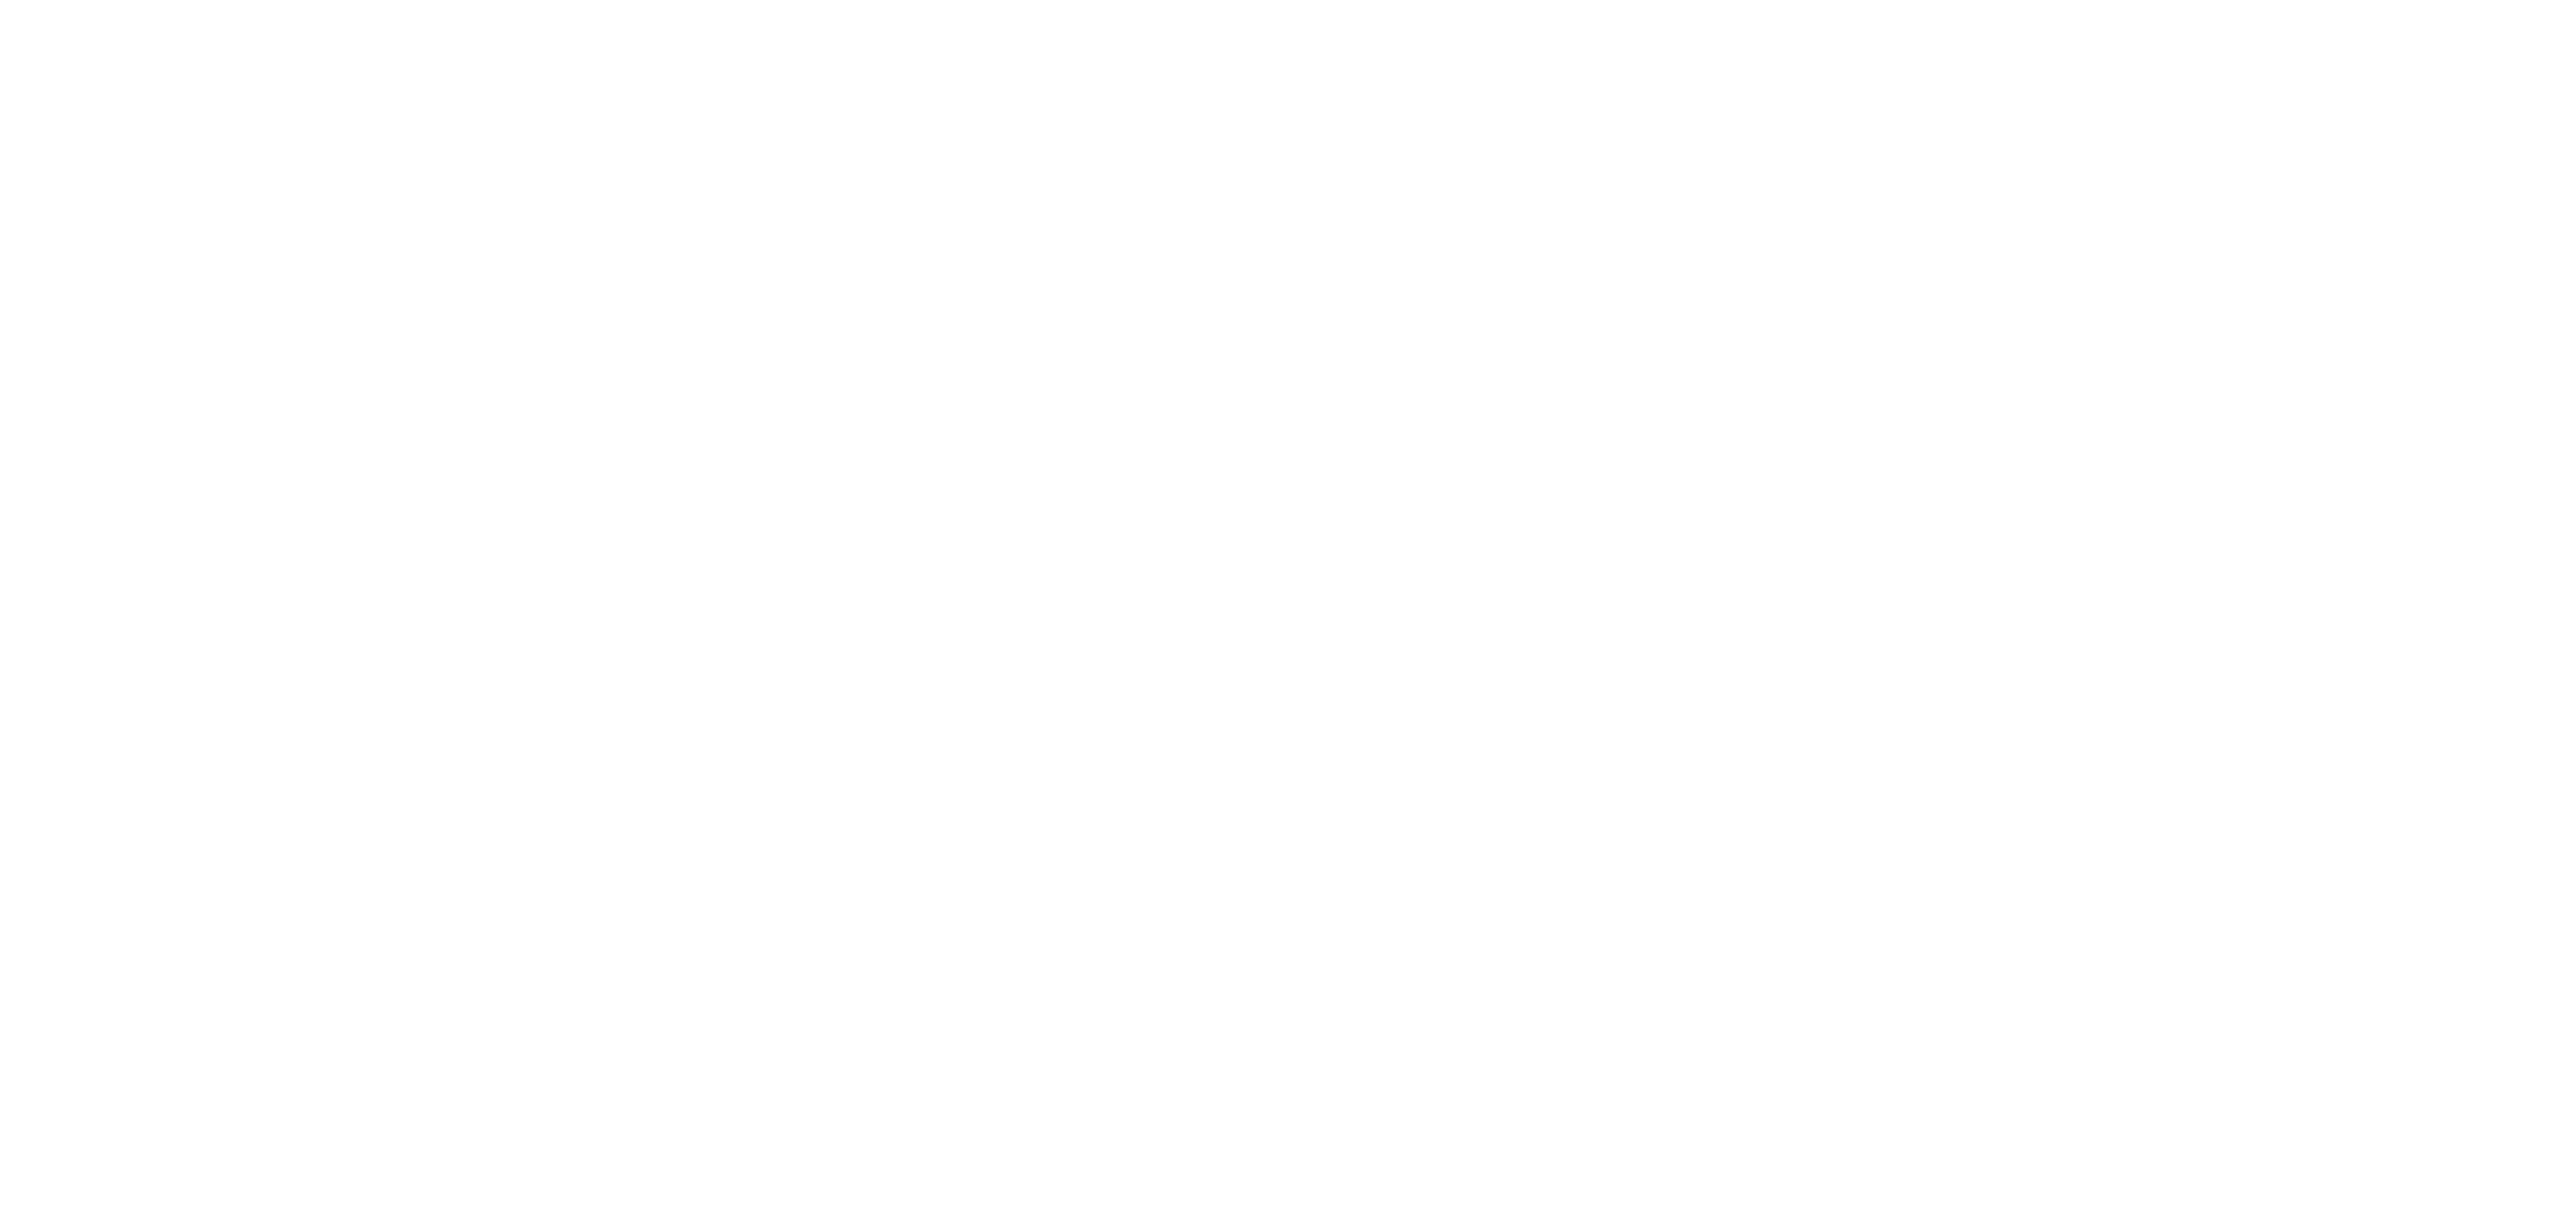 Die Psychologische Praxis Juliana Fichtenbauer